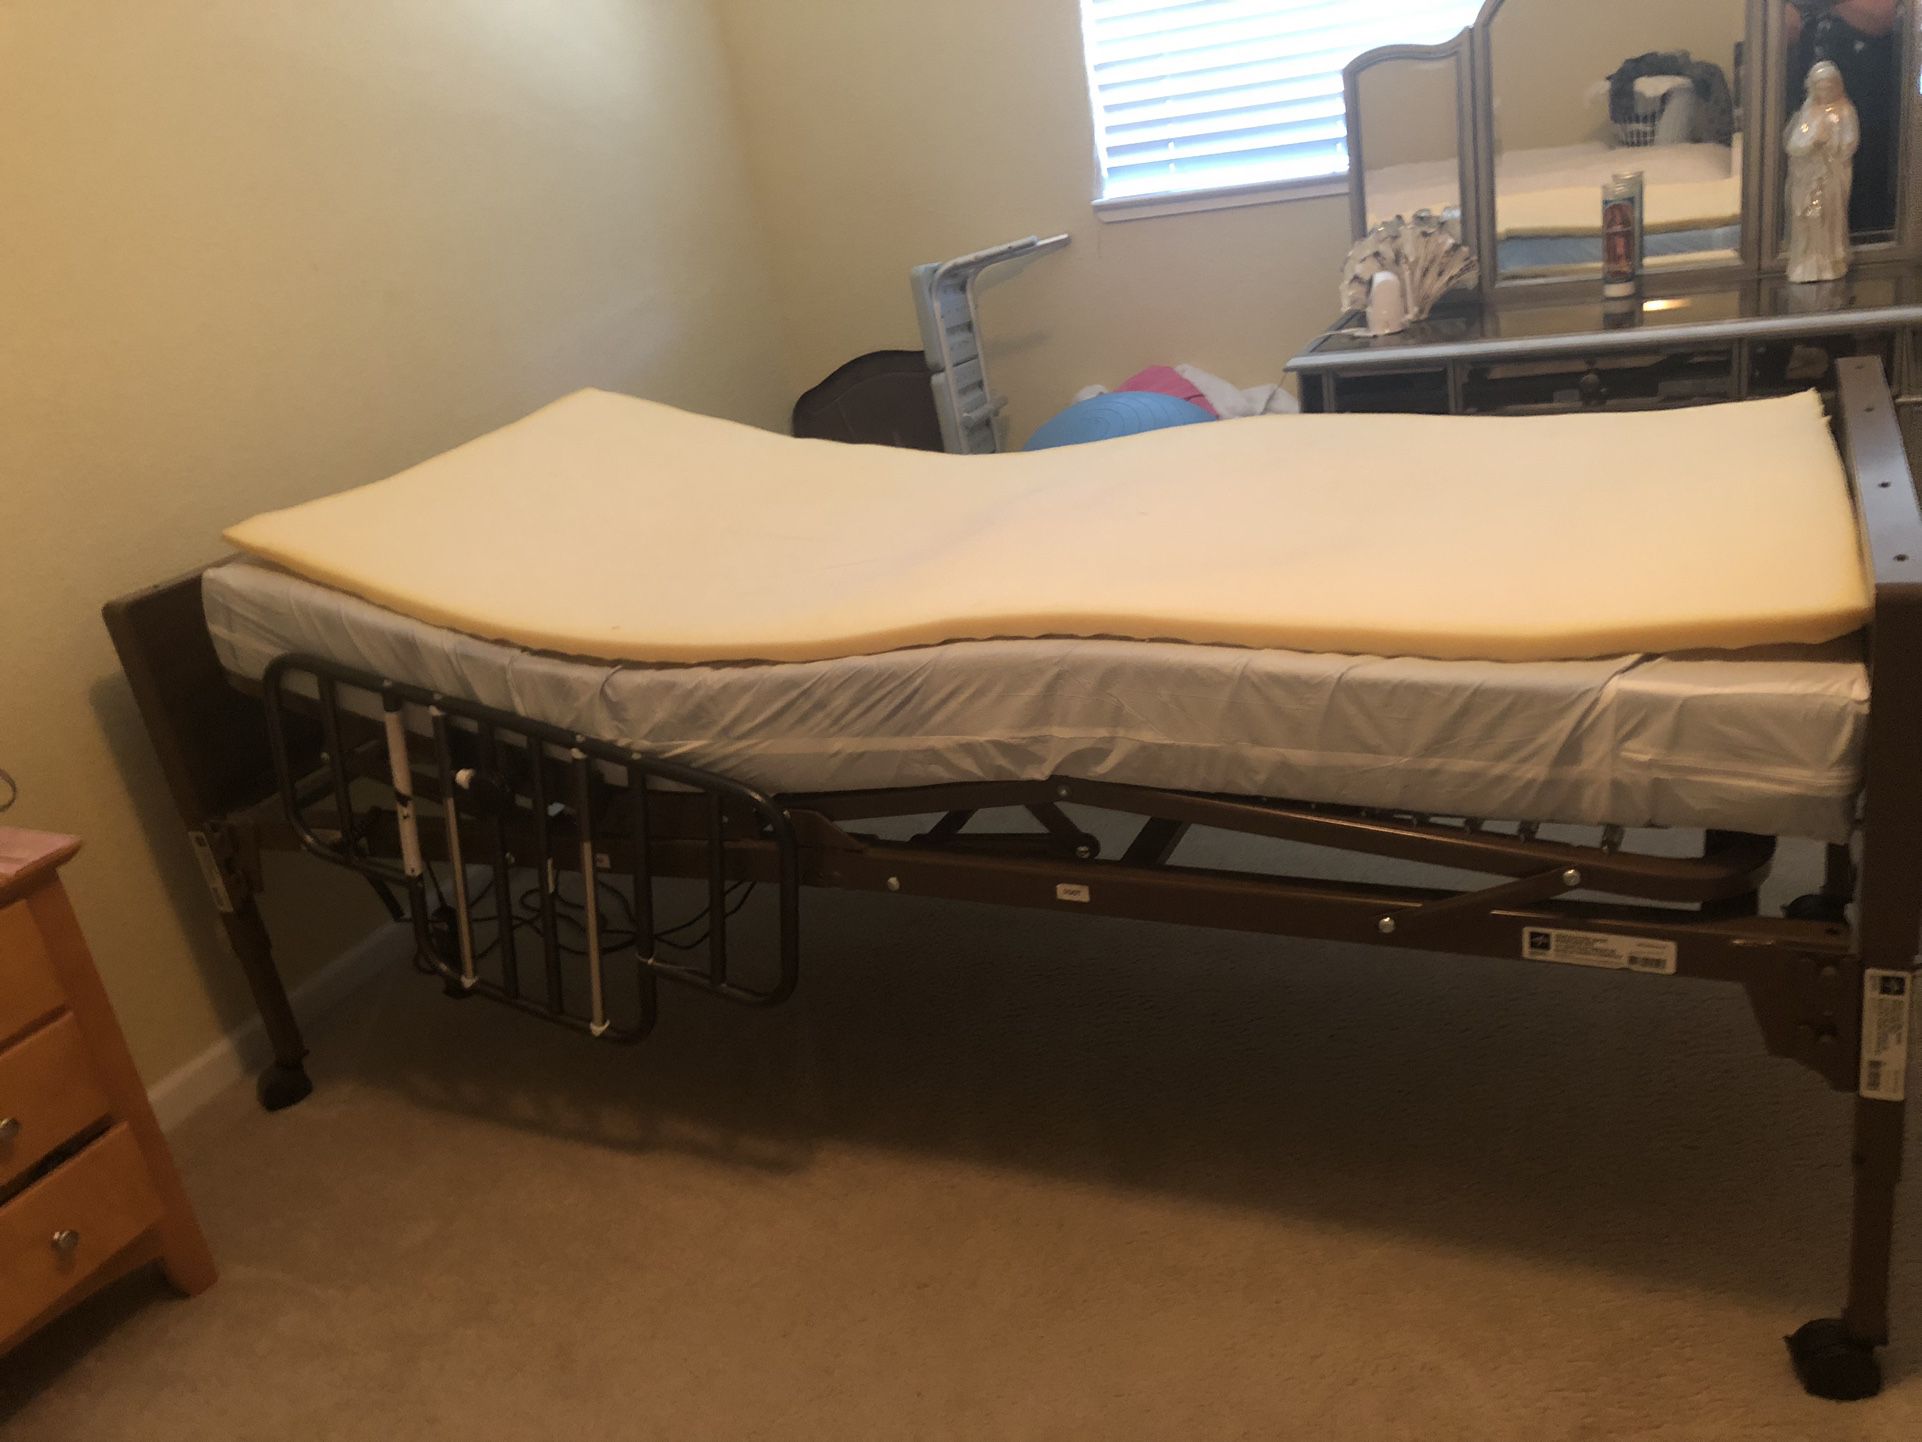 All Electric Medline  Hospital Bed